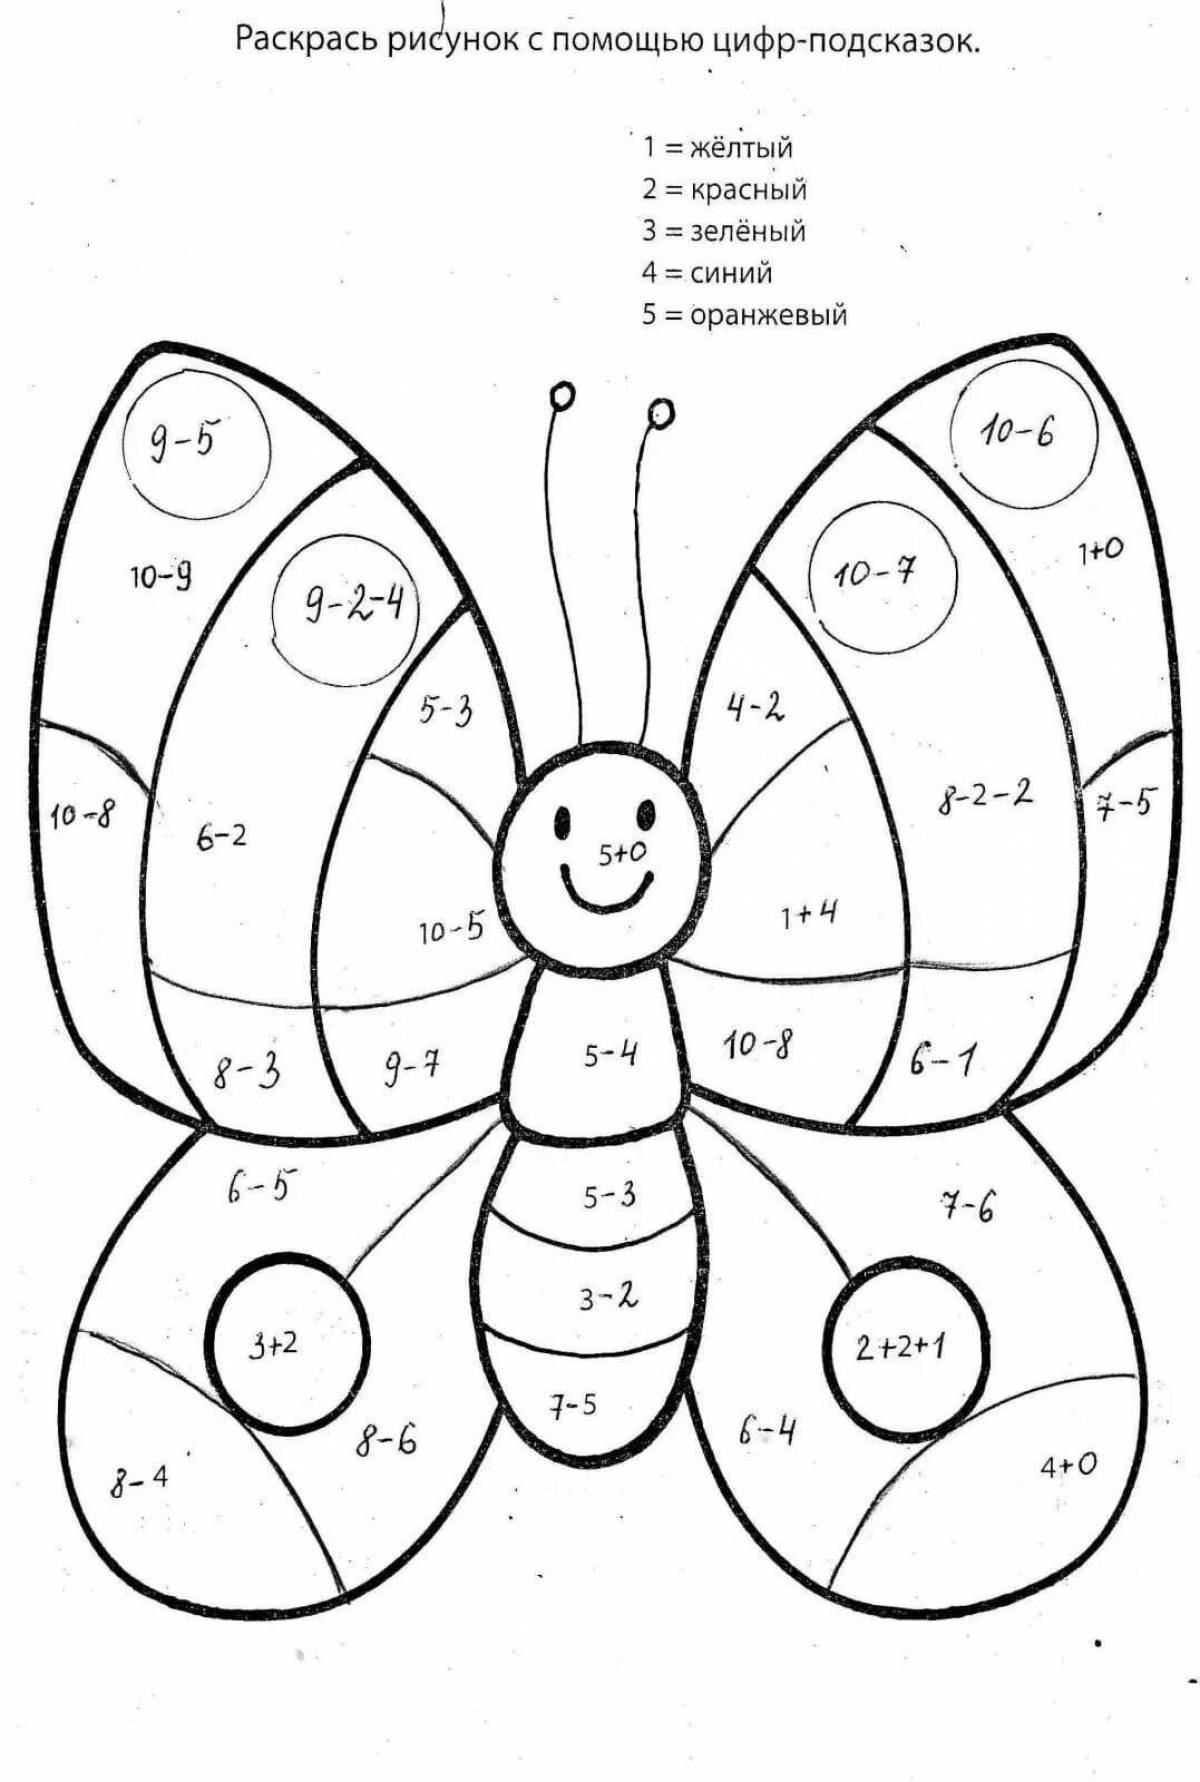 Увлекательная математическая раскраска для детей 7-8 лет